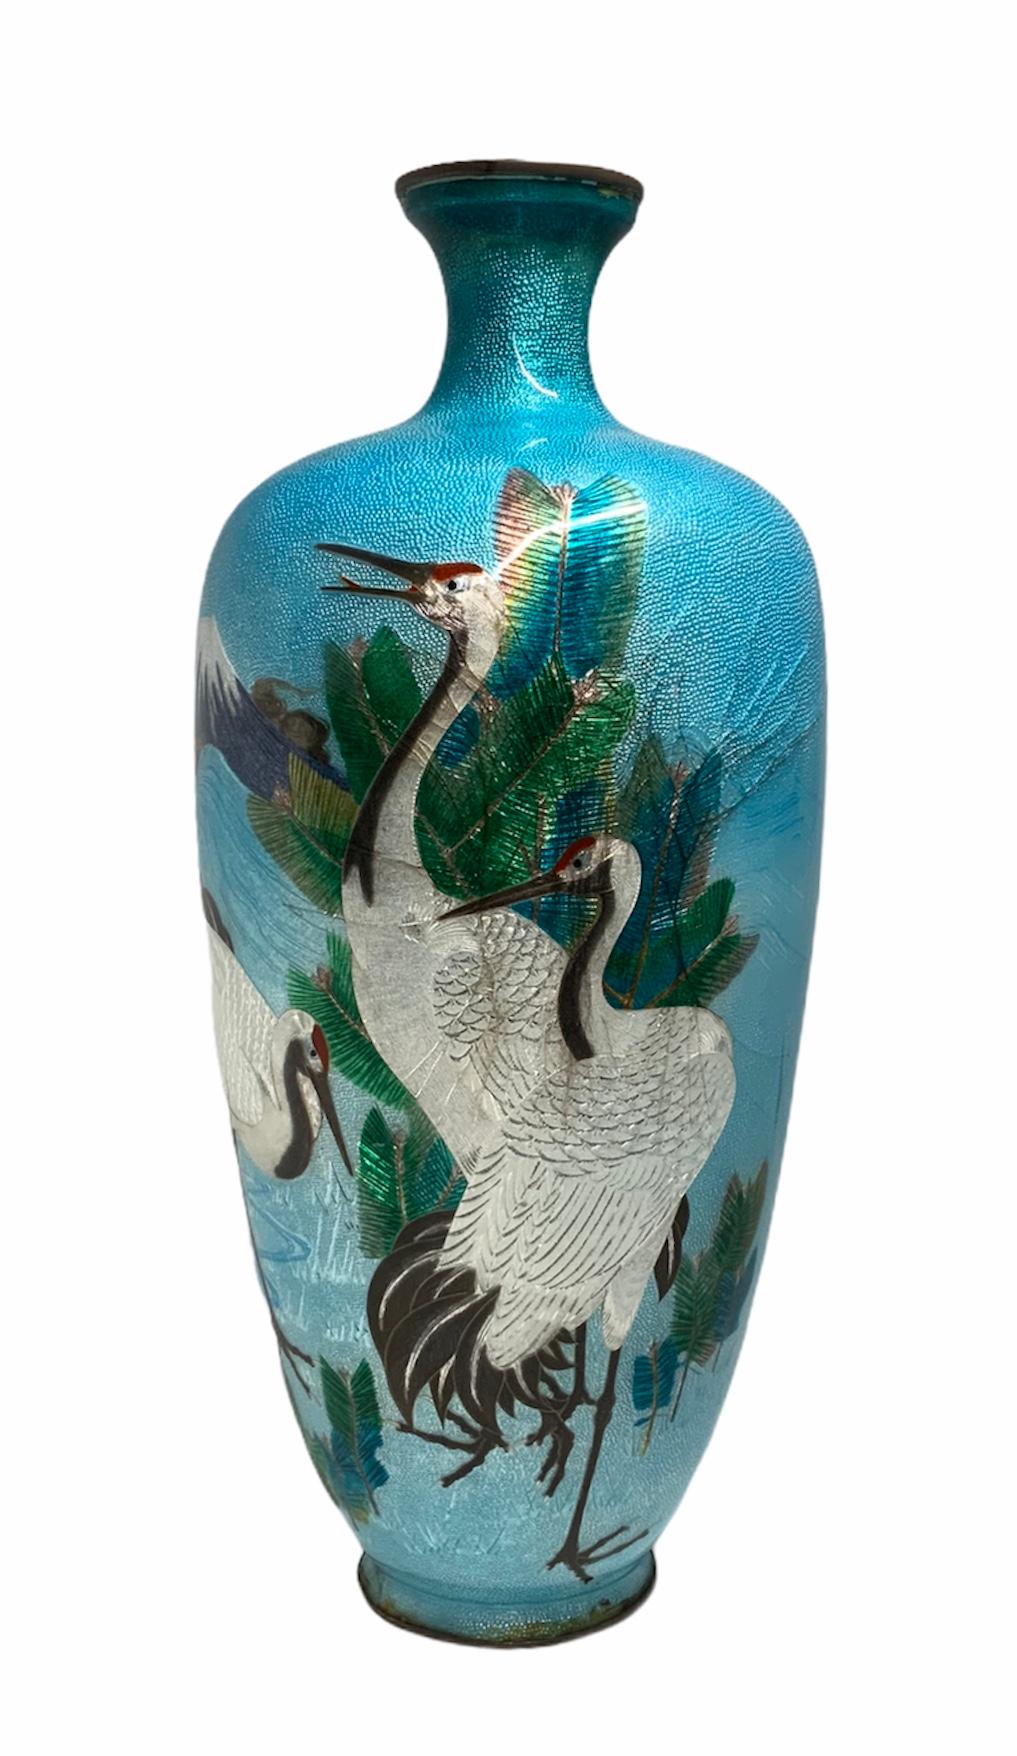 Il s'agit d'un vase en métal à feuille cloisonnée représentant des scènes continues autour de lui de trois grandes grues blanches, d'un volcan et de quelques feuilles vertes sur un fond turquoise. Sous la base, il y a une marque japonaise.